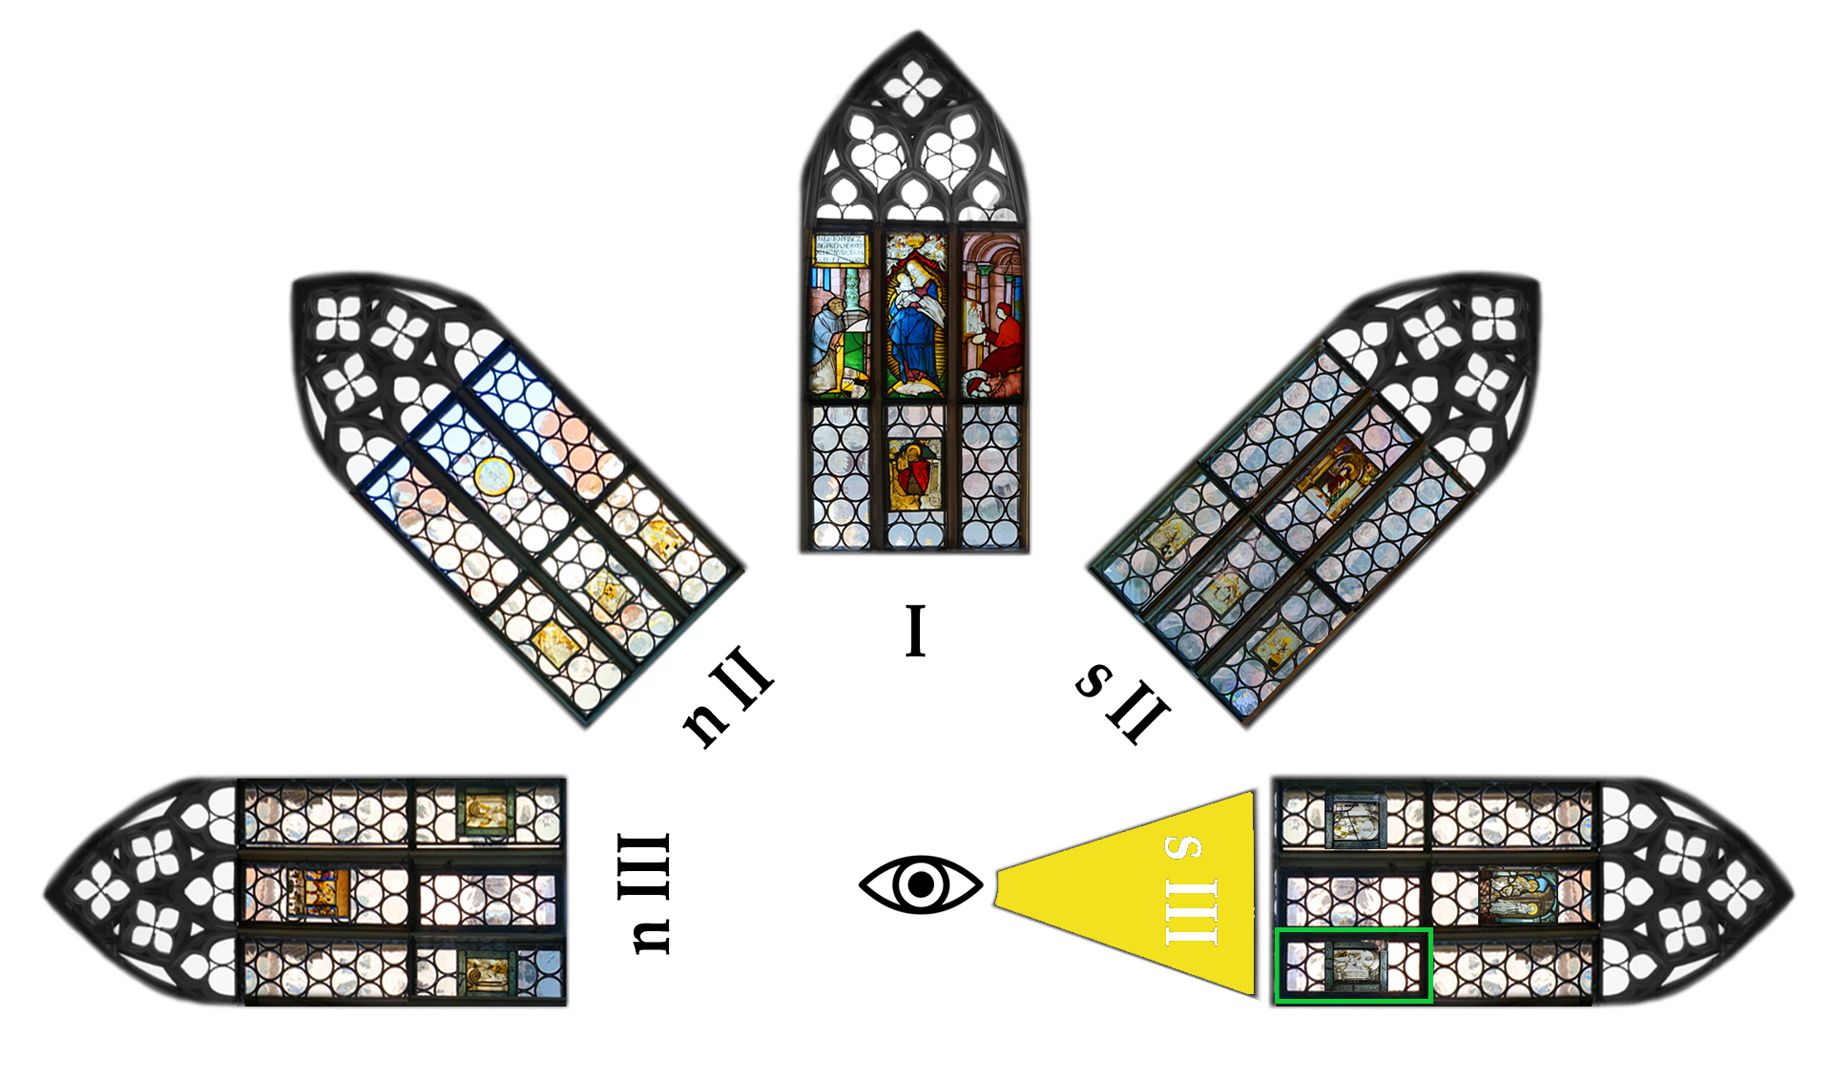 Fenster nIII 1 und sIII 1 des Sebalder Chörleins Lageplan, viertes Fenster der Reihe